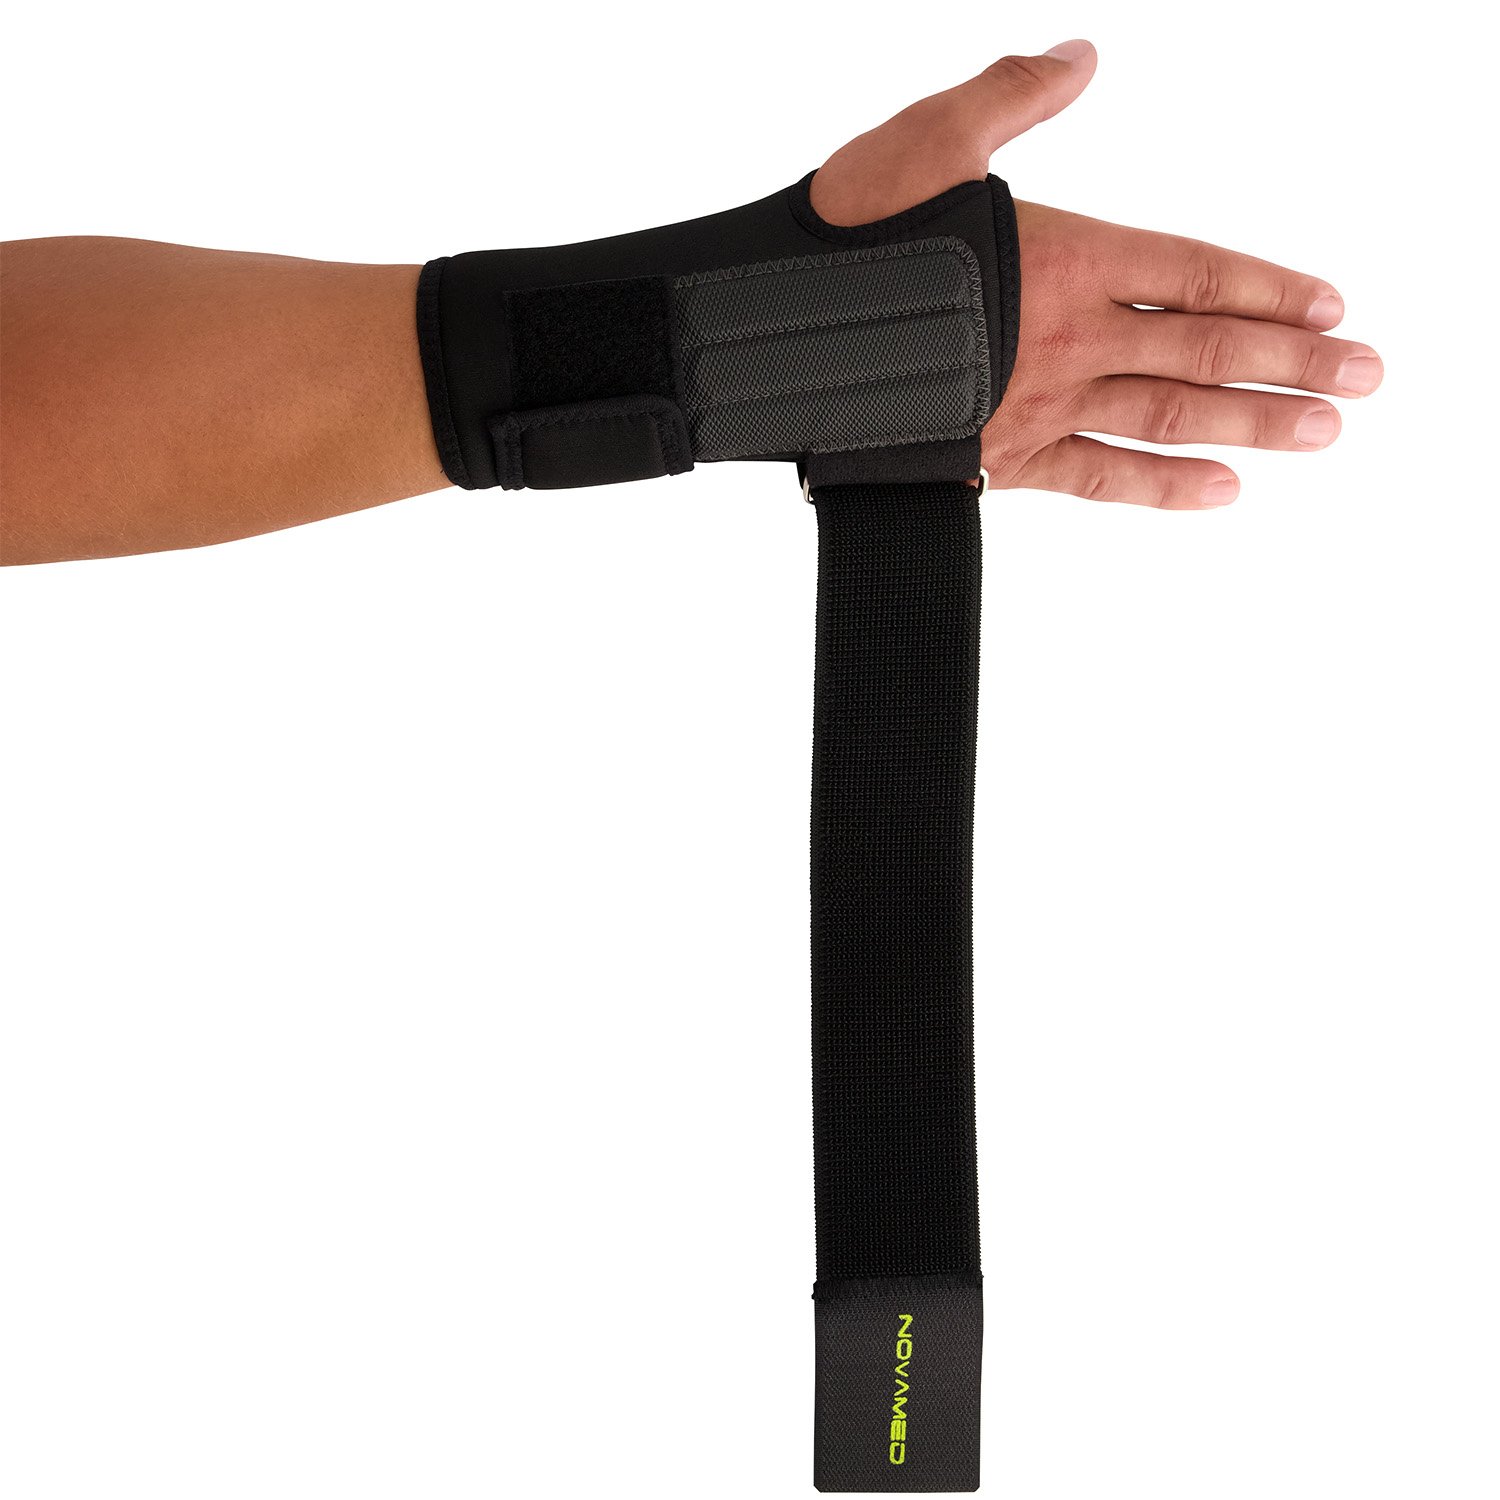 novamed lightweight wrist support open hand